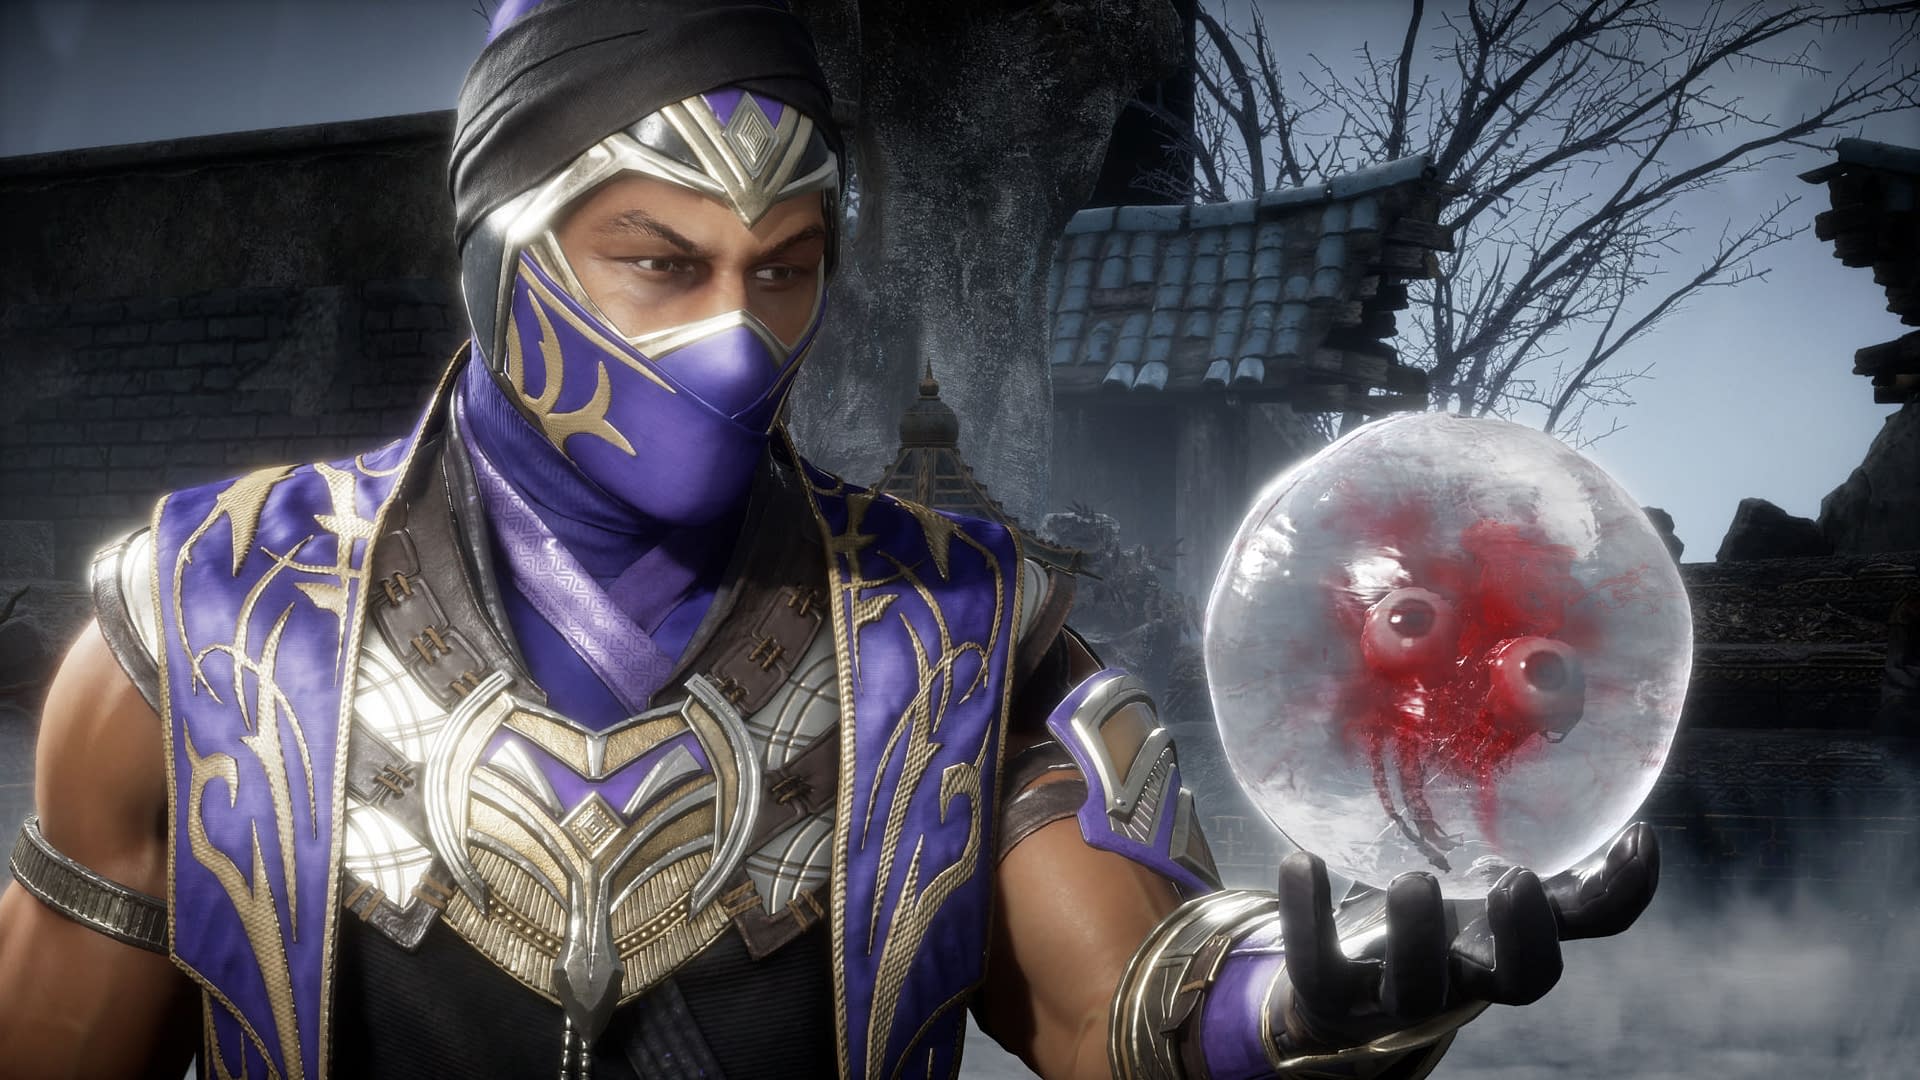 Mortal Kombat 11 Ultimate - Launch Trailer